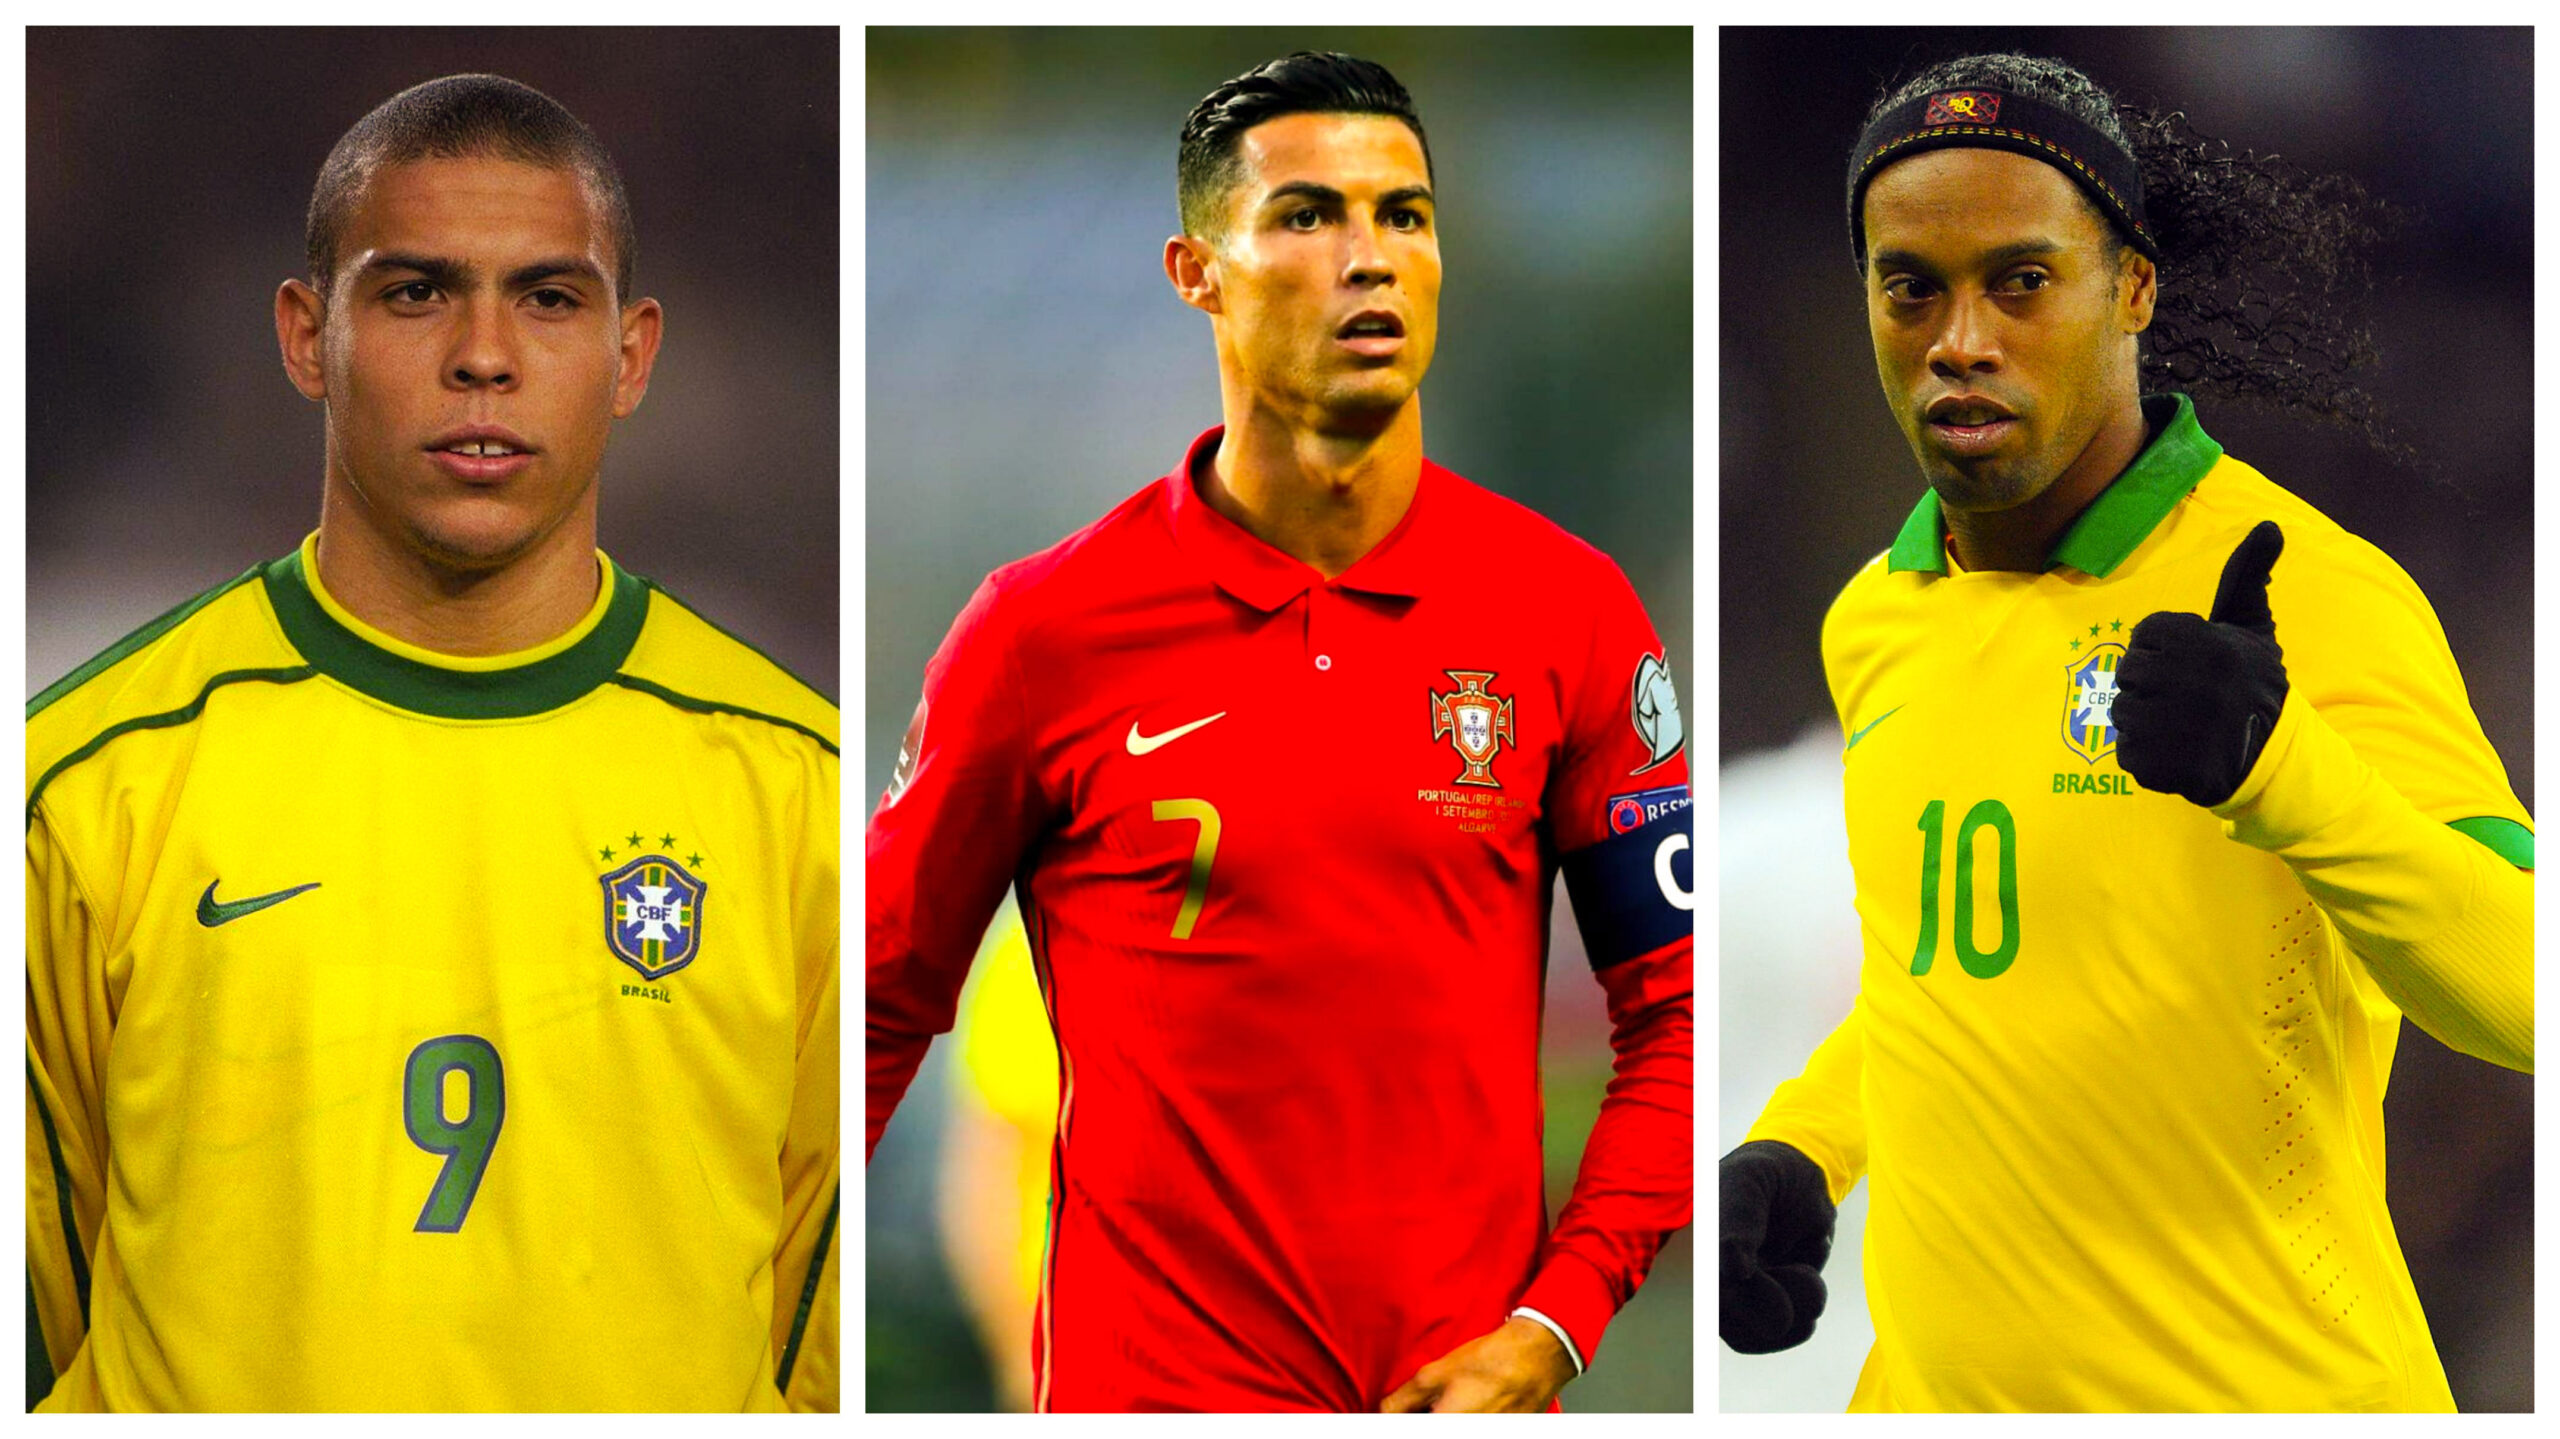 Une légende Brésilienne surprend : «J’ai joué avec Ronaldo et Ronaldinho mais je préfère Cr7»